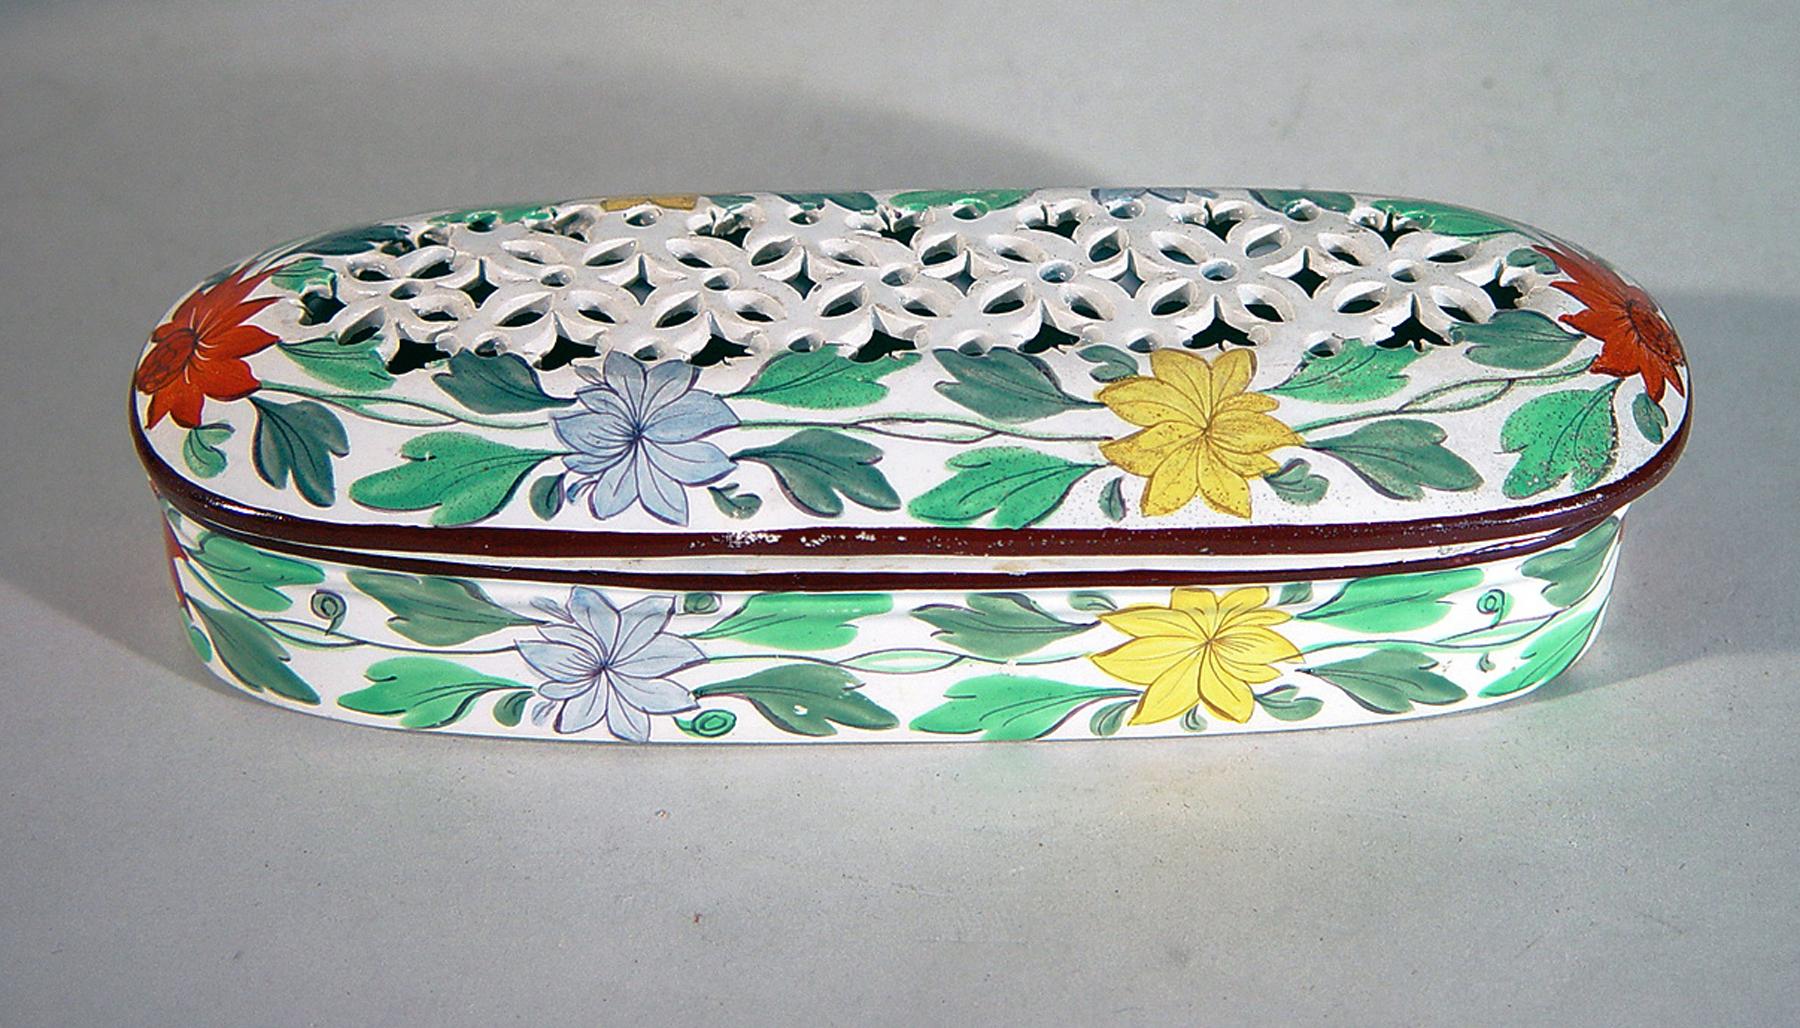 Boîte porte-brosse à dents couverte de Bristol Pearlware, décorée de fleurs,
Circa 1820

La forme ovale inhabituelle avec un couvercle à piqûres était destinée à deux brosses à dents avec un décor botanique peint. Lorsqu'il est ouvert, il y a un